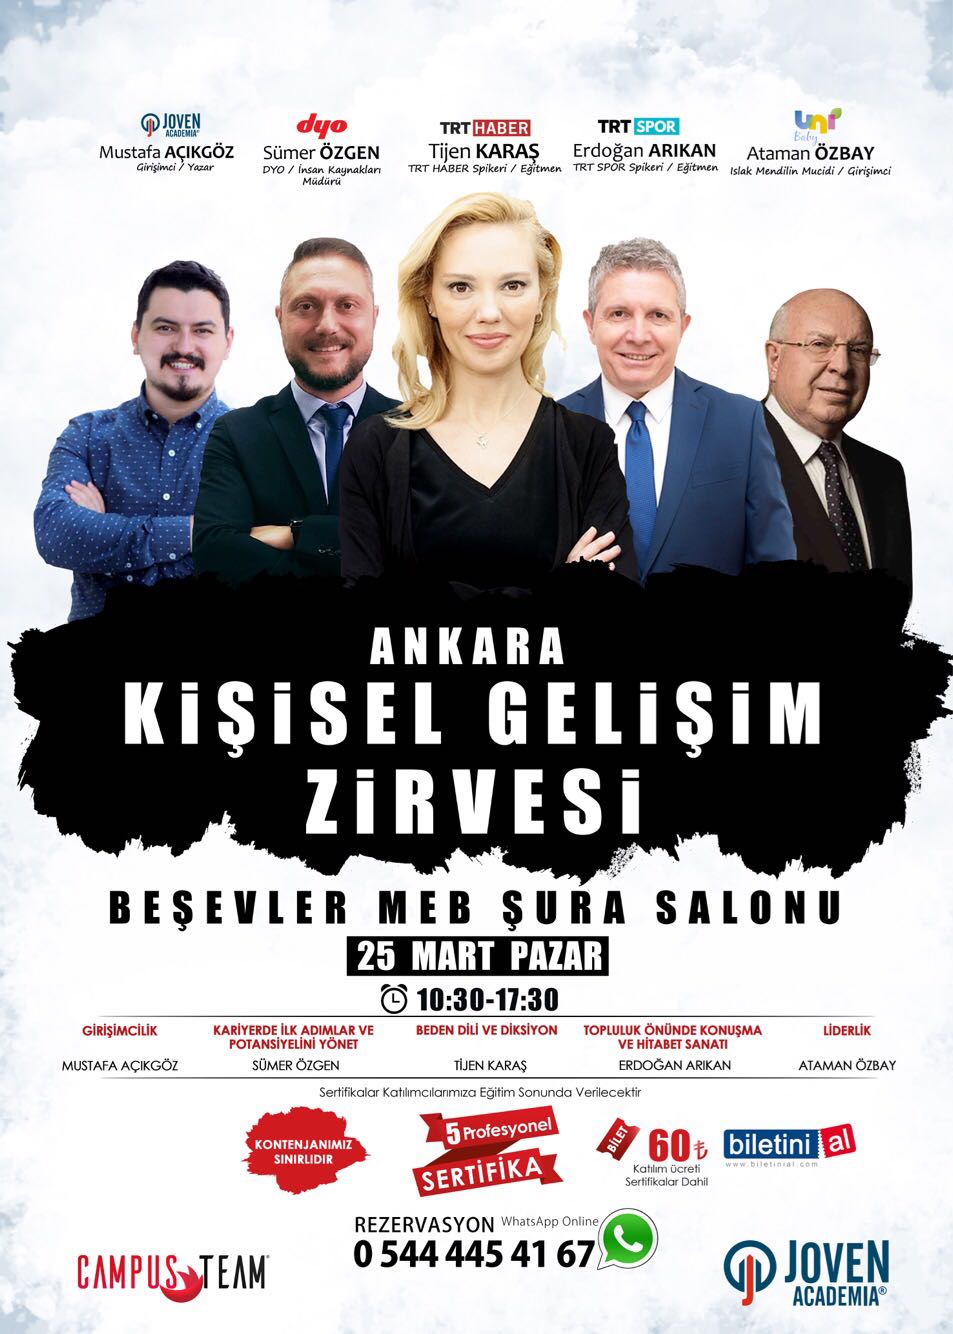 Kişisel Gelişim Zirvesi  Ankara  2018